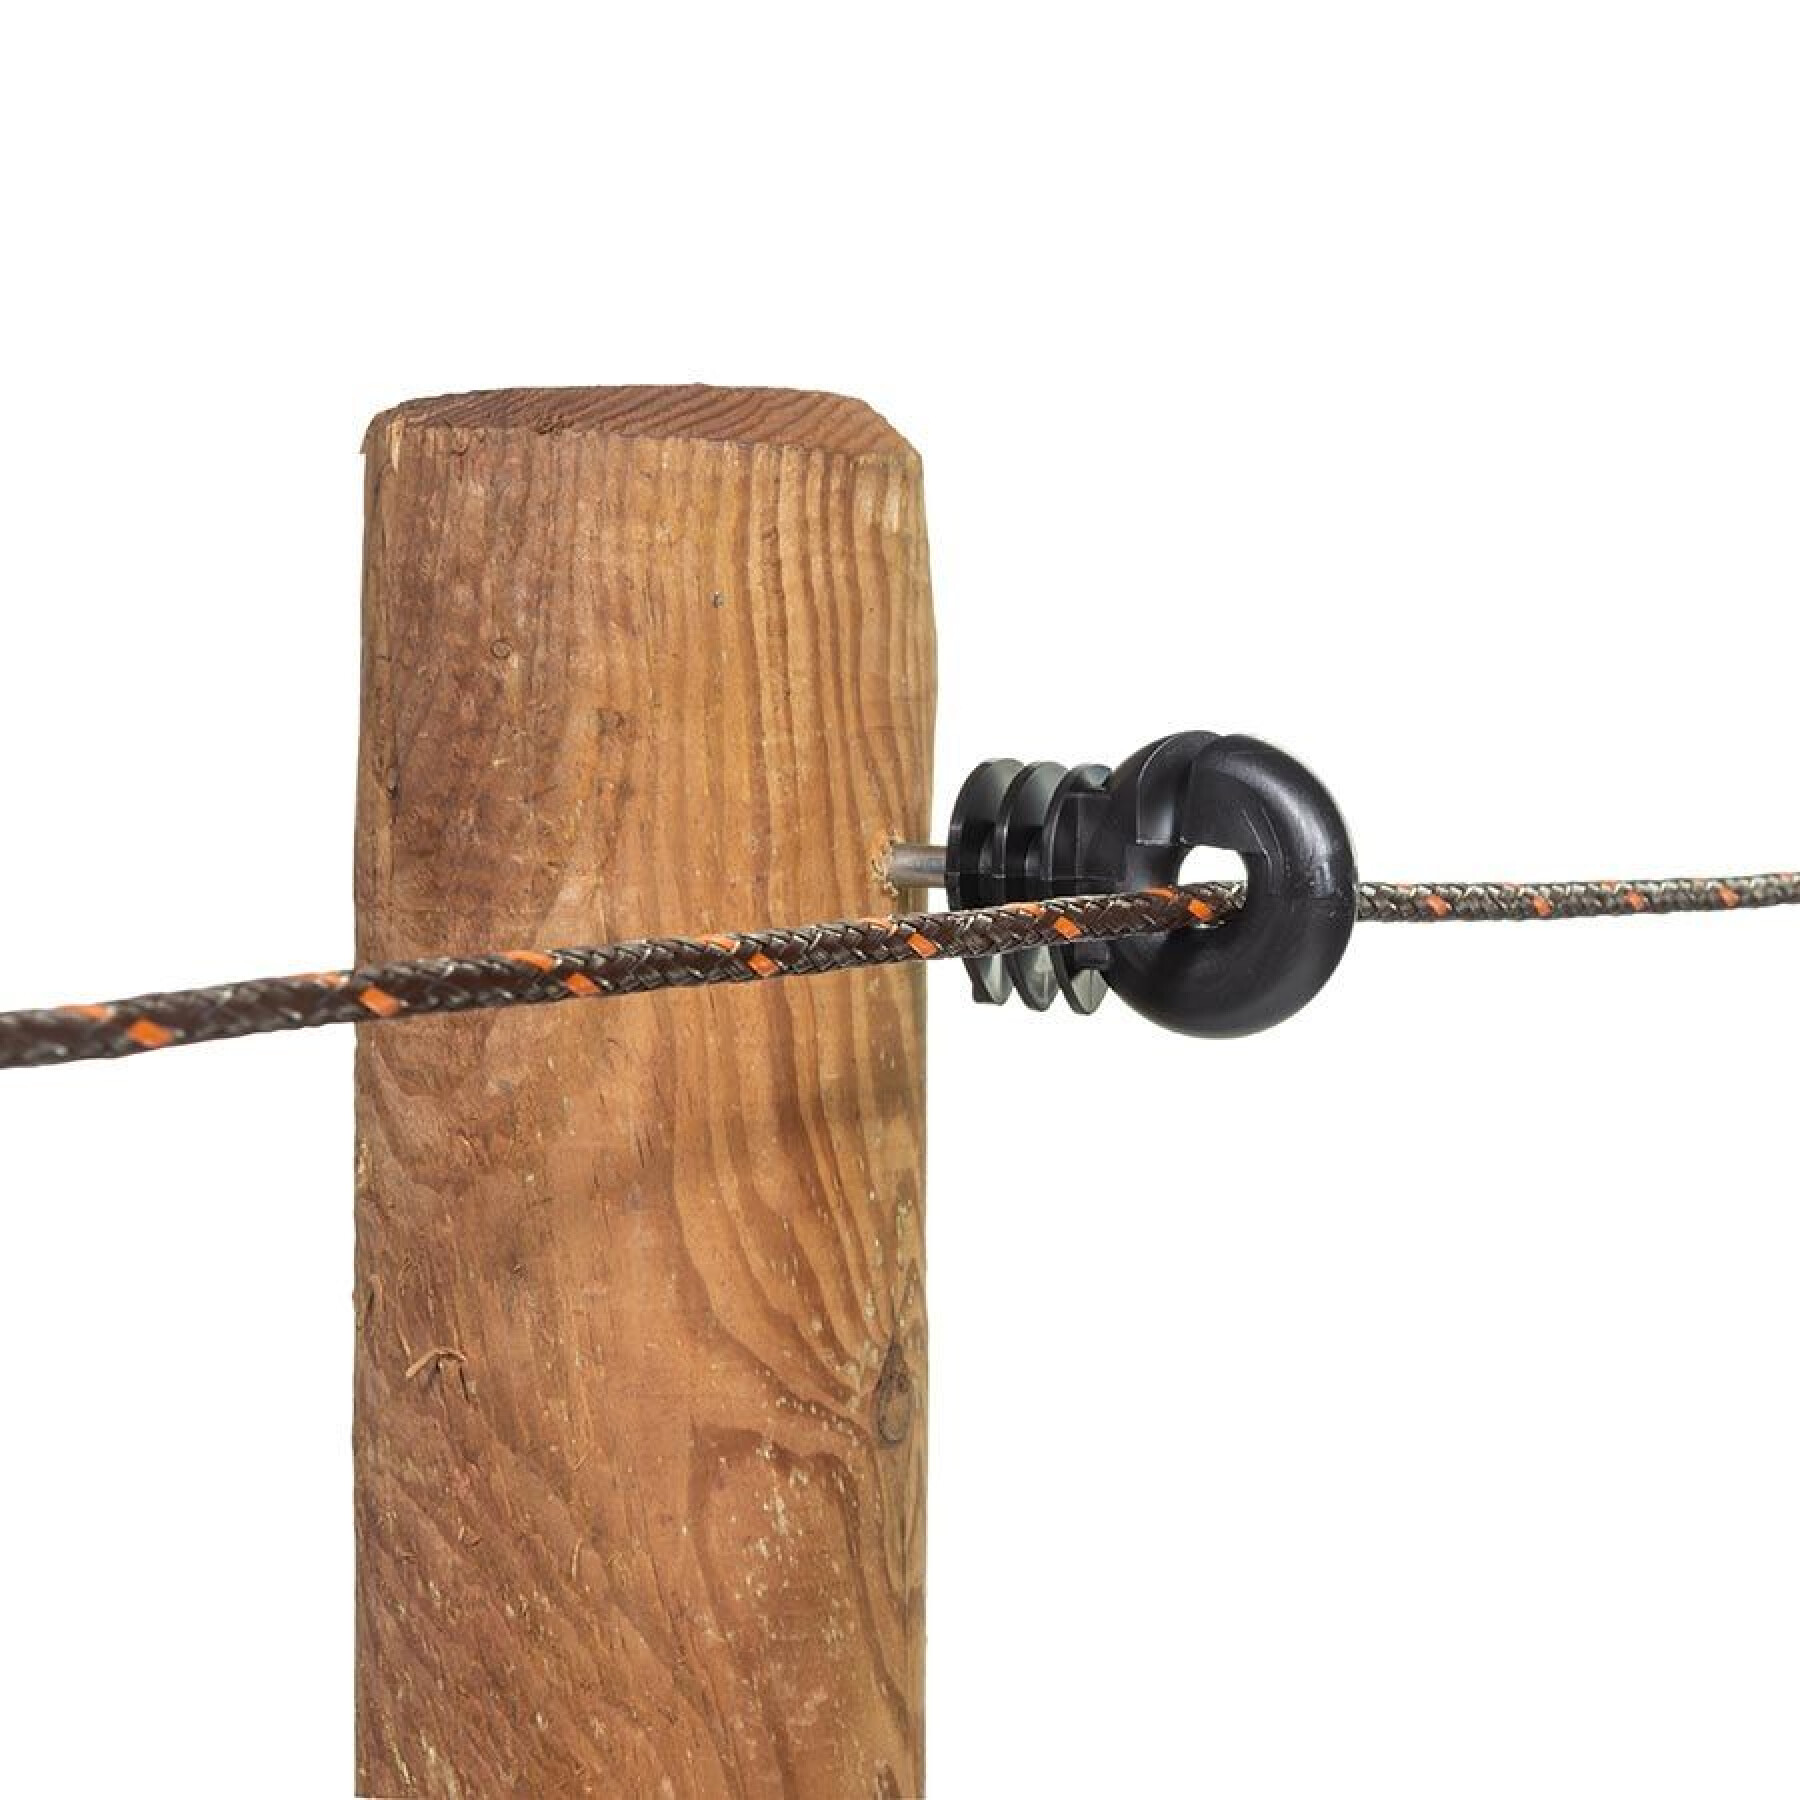 Aisladores para vallas eléctricas de tornillo bs wood Gallagher (x25)